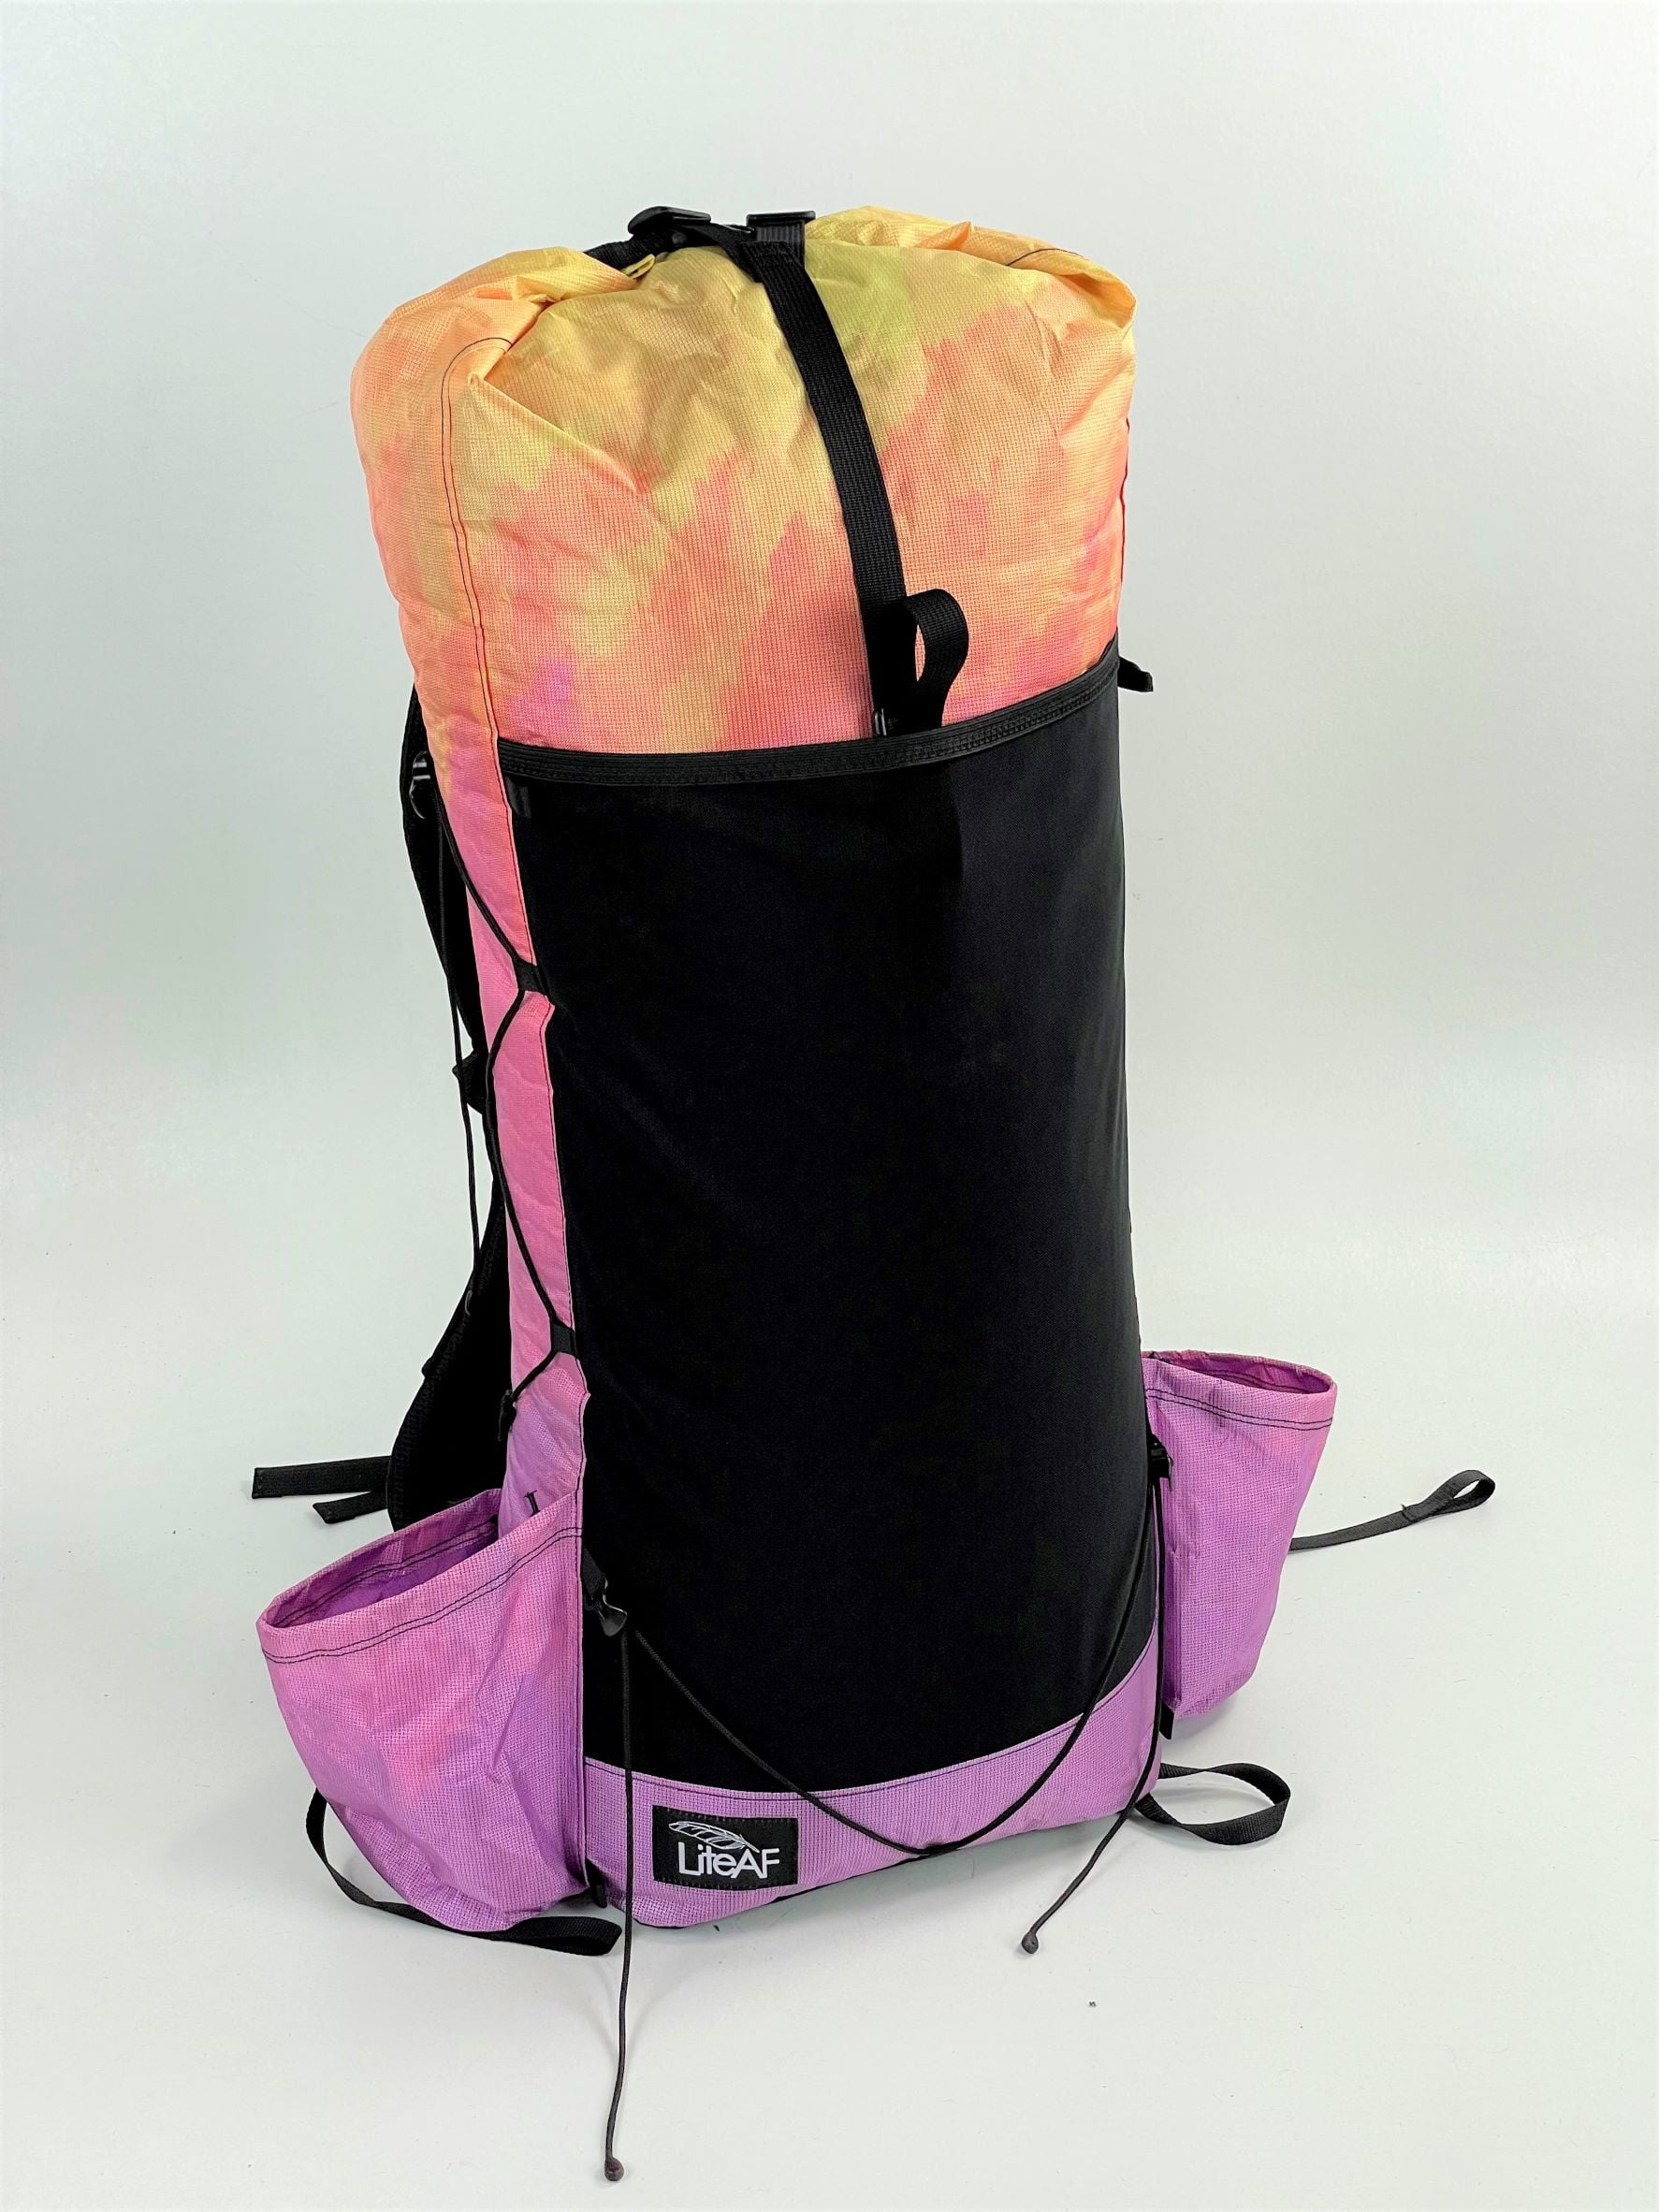 Best thru-hiking backpacks